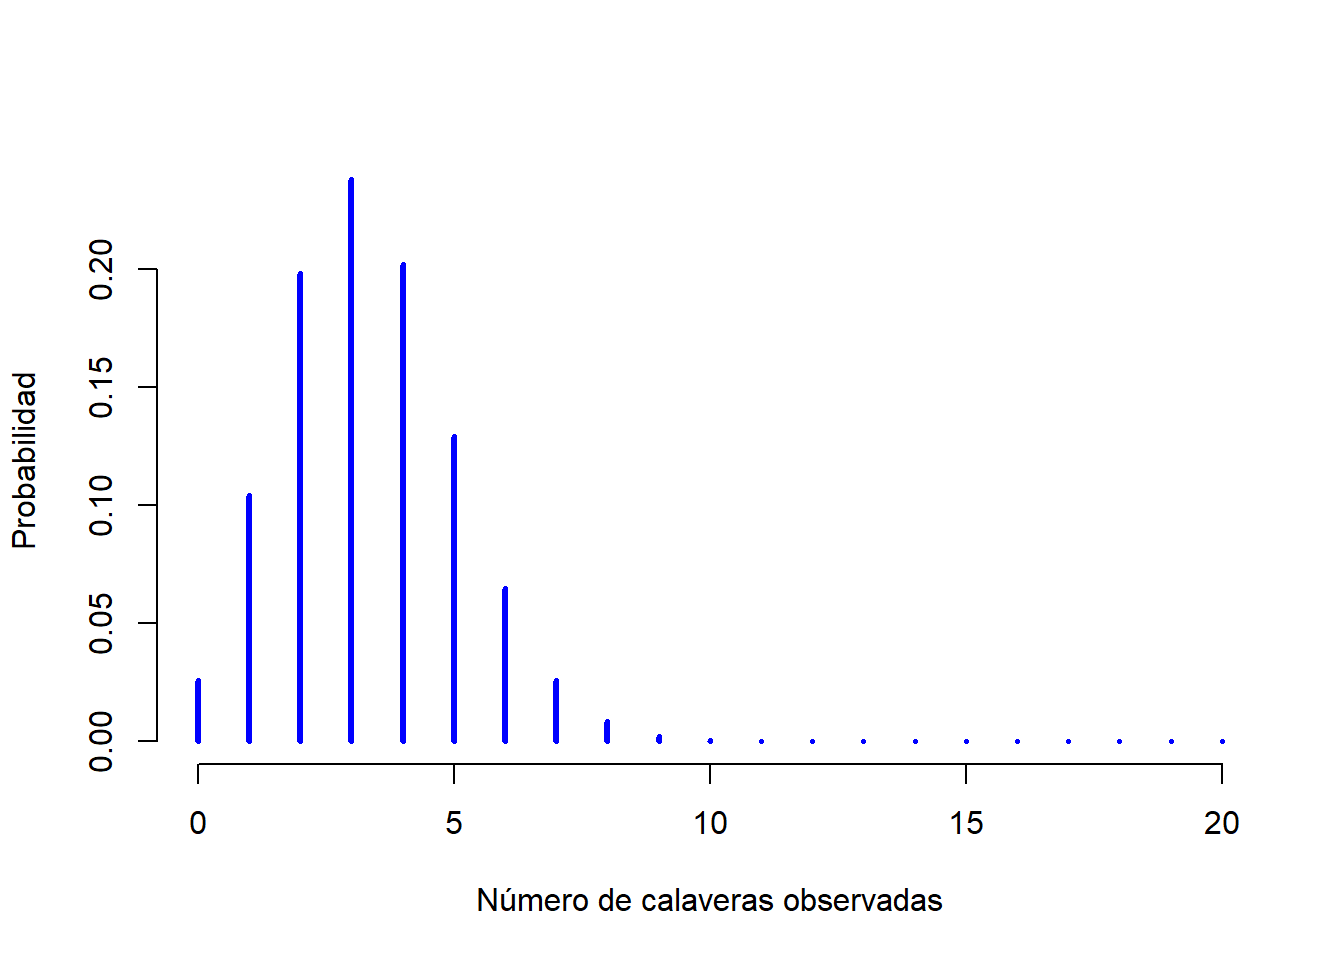  La distribución binomial con parámetro de tamaño de $N=20$ y una probabilidad de éxito de $theta = 1/6$. Cada barra vertical representa la probabilidad de un resultado específico (un valor posible de $X$). Ya que esta es una distribución de probabilidad, cada una de las probabilidades debe ser un número entre 0 y 1, y la altura de las barras también deben sumar 1.